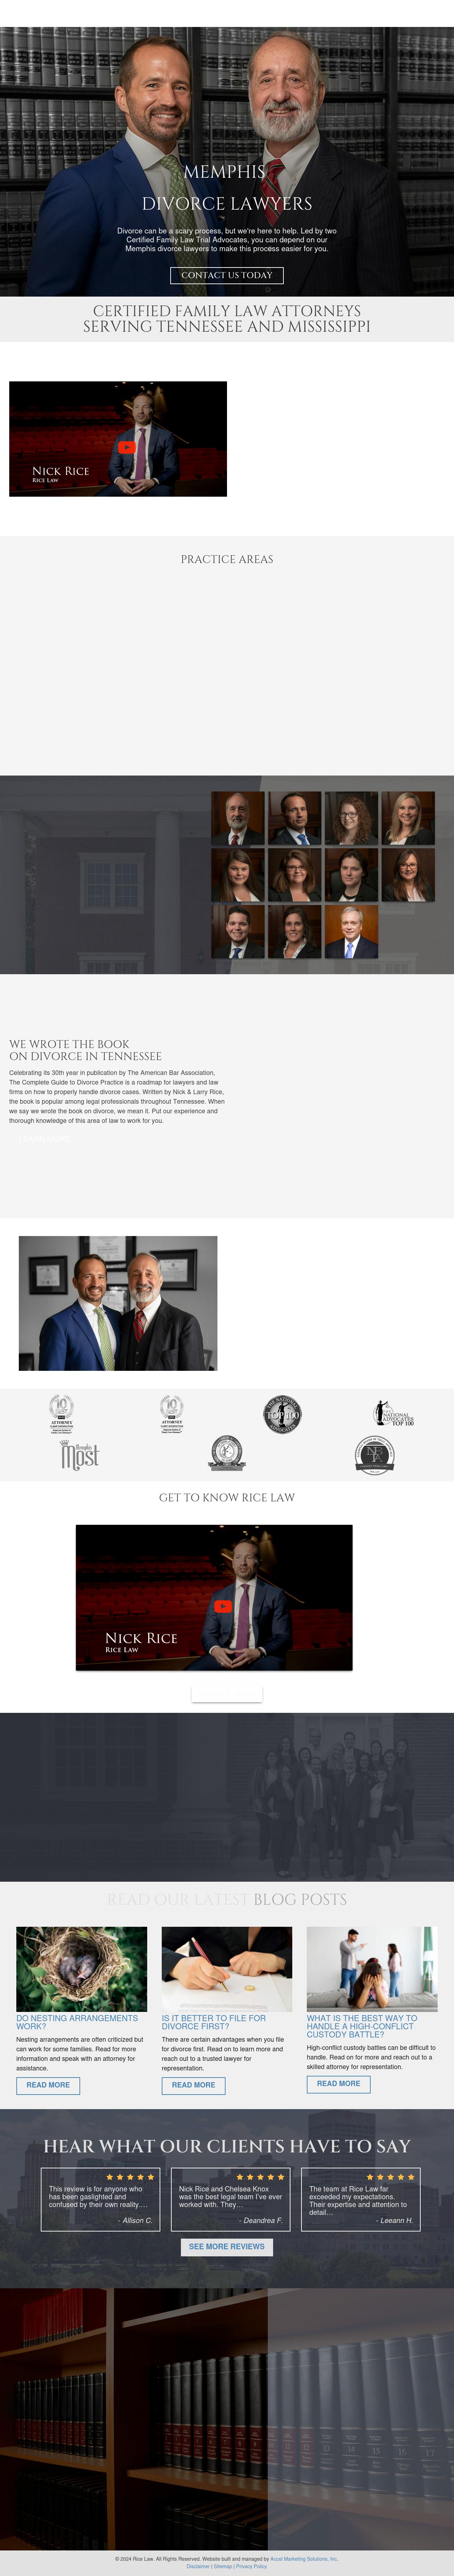 Rice Amundson & Caperton PLLC - Memphis TN Lawyers